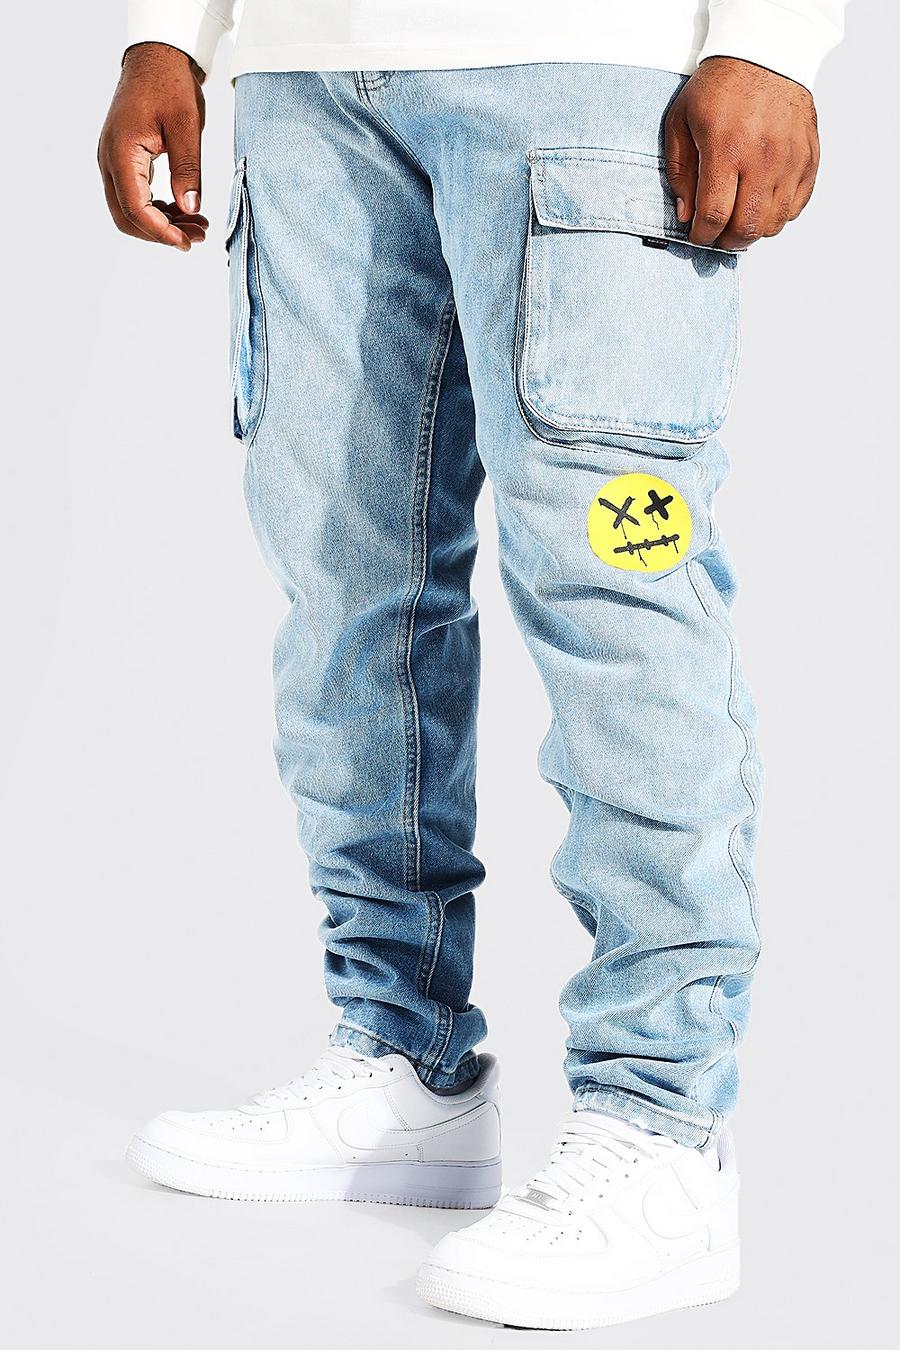 Jeans Cargo Plus Size Skinny Fit in denim rigido con stampa e pieghe sul fondo, Ice blue